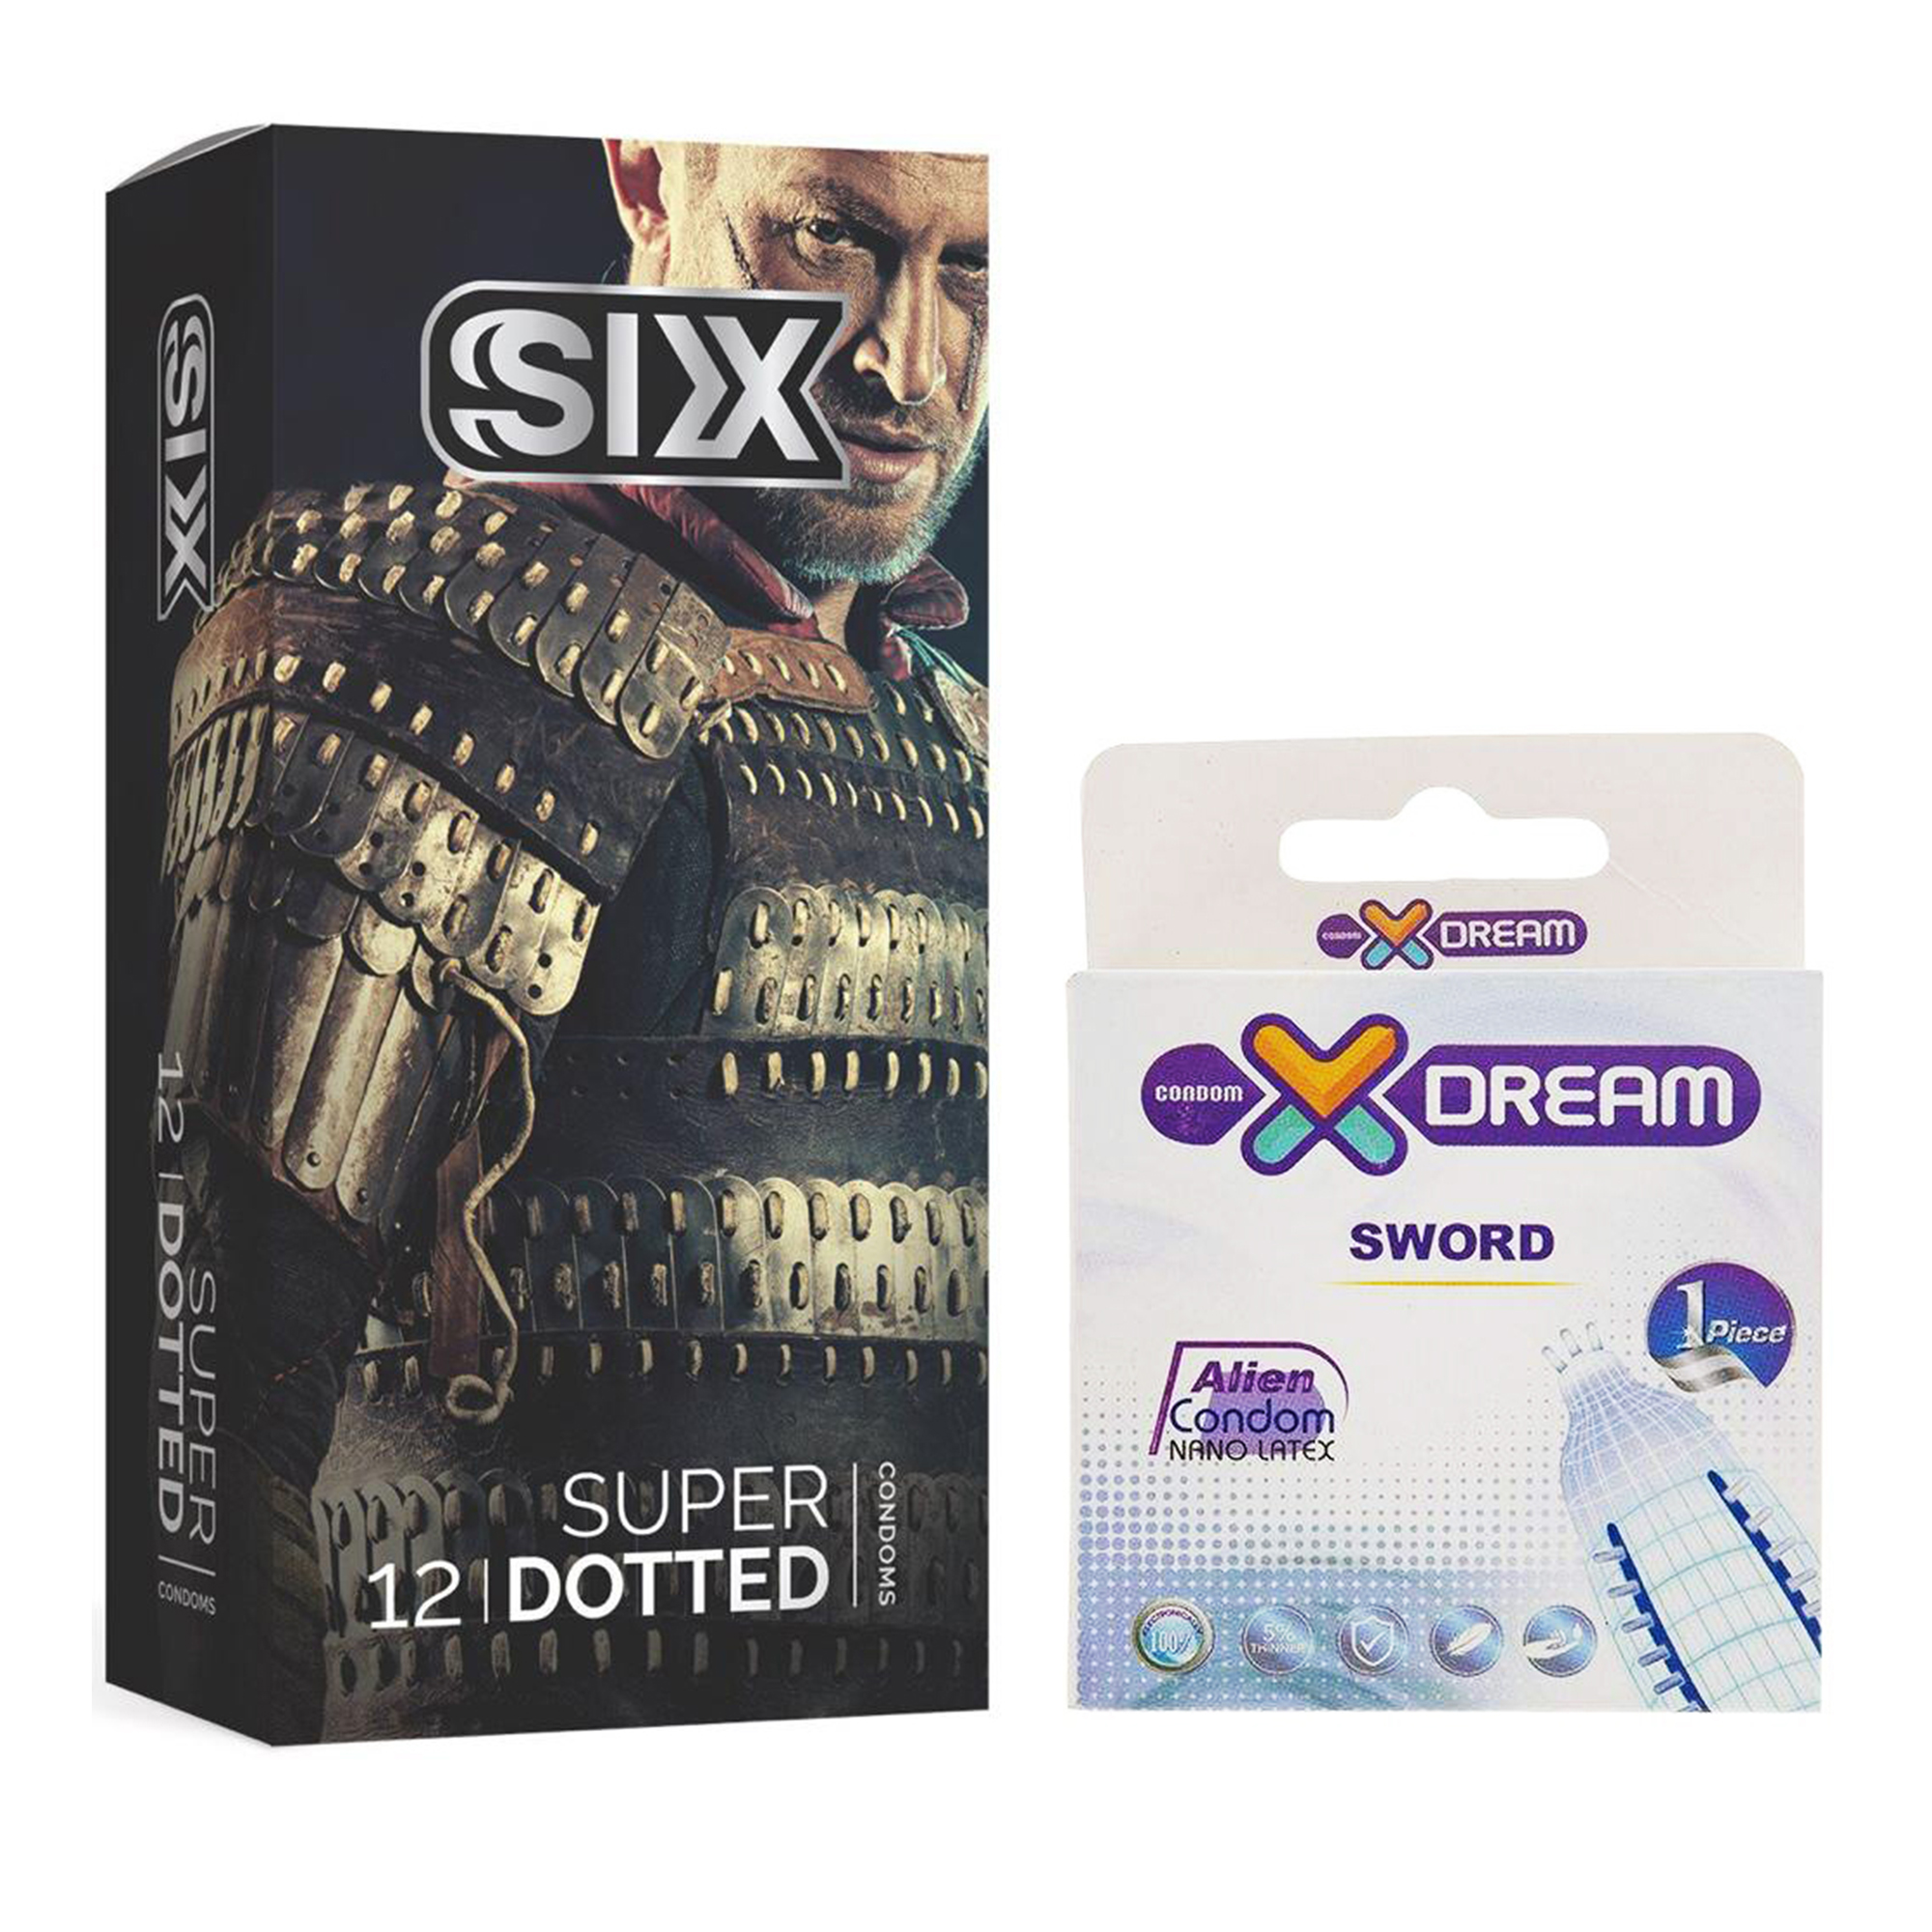 کاندوم سیکس مدل Super Dotted بسته 12 عددی به همراه کاندوم ایکس دریم مدل Sword